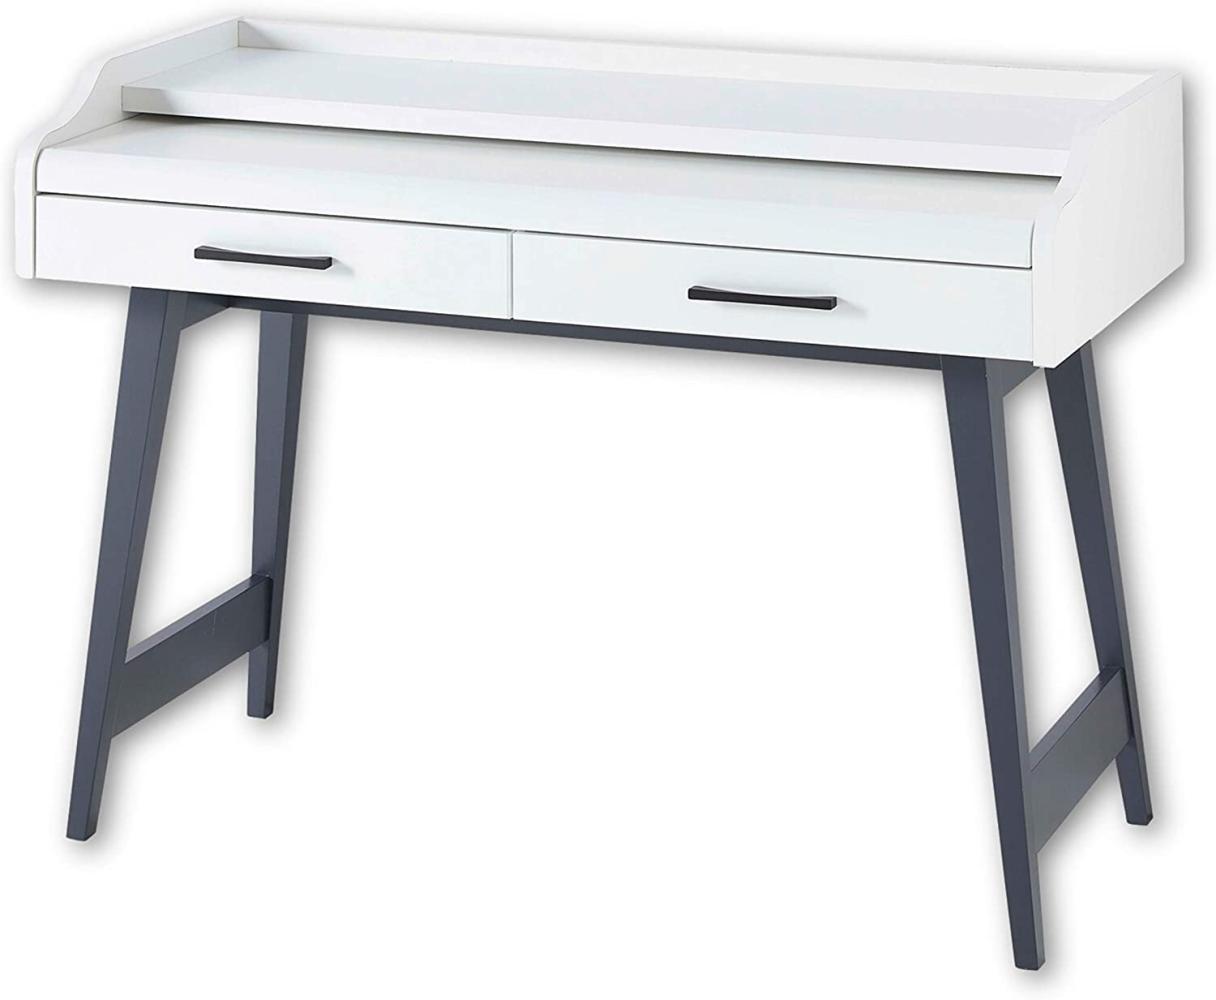 Stella Trading 'Inno4home' Schreibtisch mit Schubladen und ausziehbarer Tischplatte, Weiß matt, 120 x 84 x 50 cm Bild 1